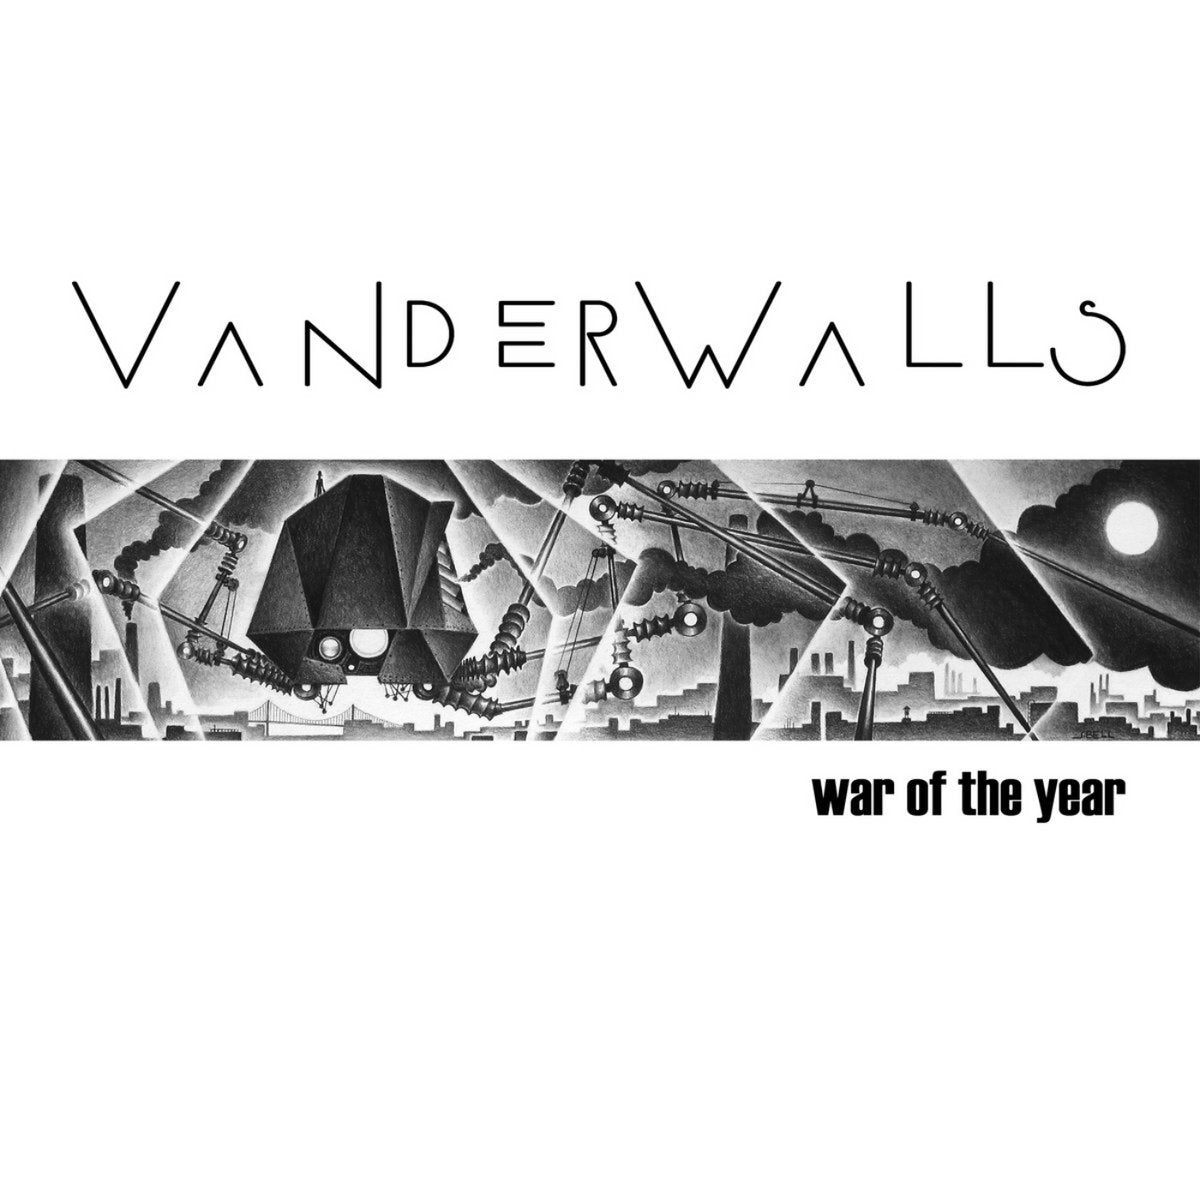 VANDERWALLS - "WAR OF THE YEAR" Compact Disc